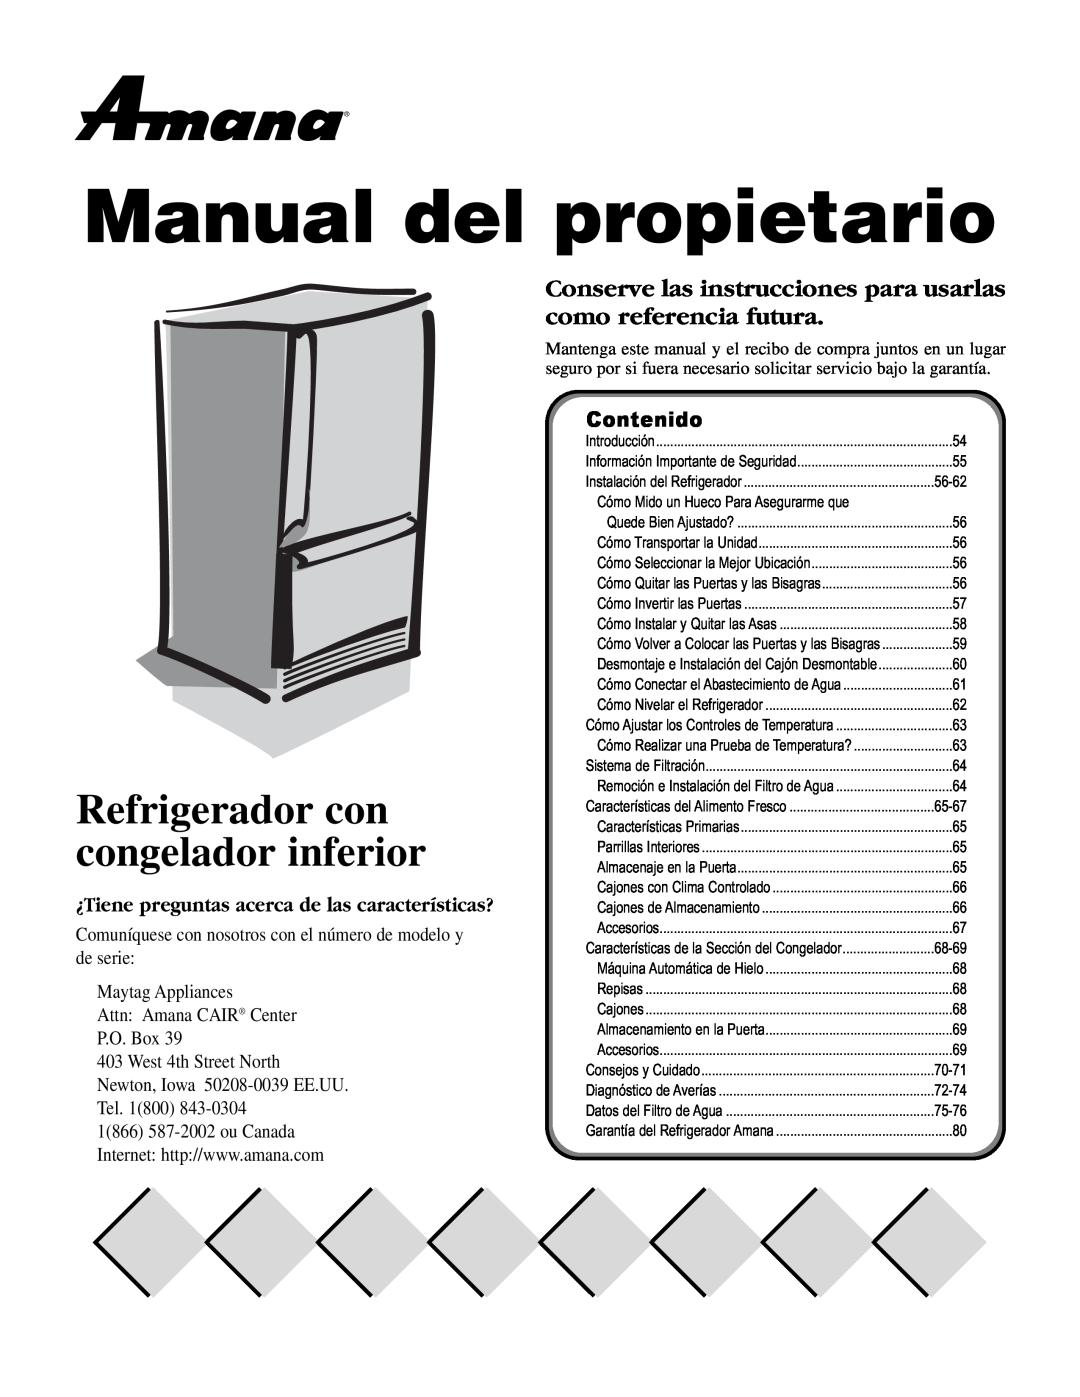 Maytag ARB2257CW, ARB2557CSL, ARB2257CSR, ARB2557CSR Manual del propietario, Refrigerador con congelador inferior, Contenido 